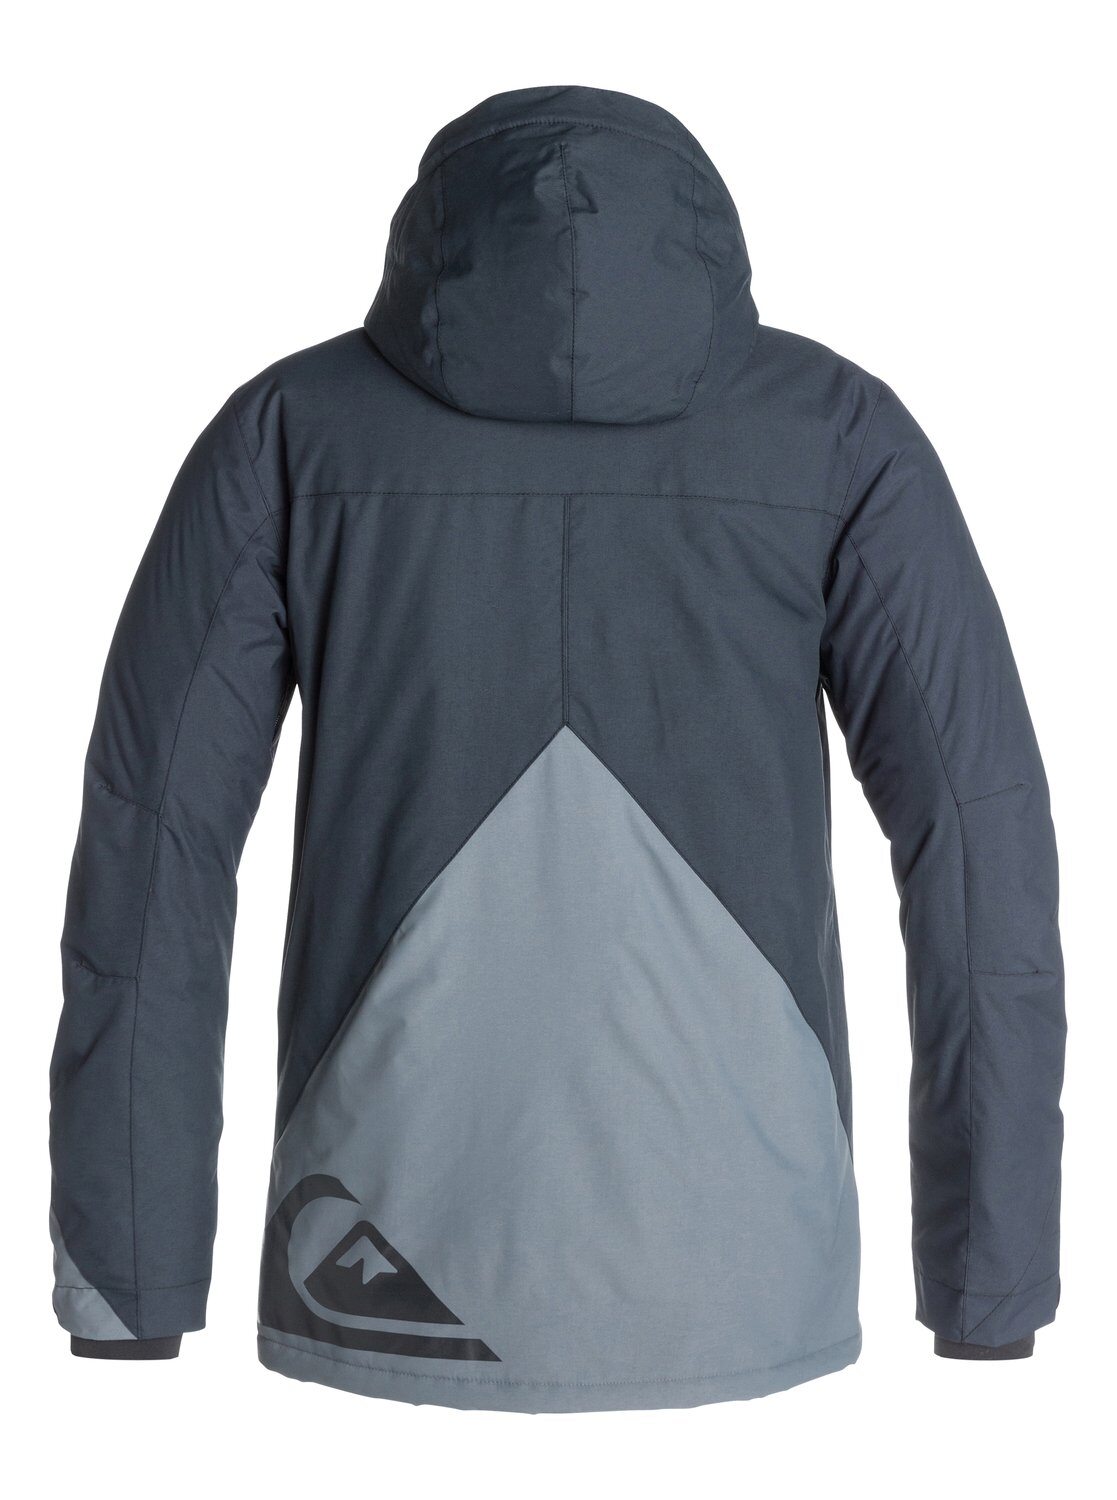 Куртки и ветровки, куртка сноубордическая quiksilver арт.274360